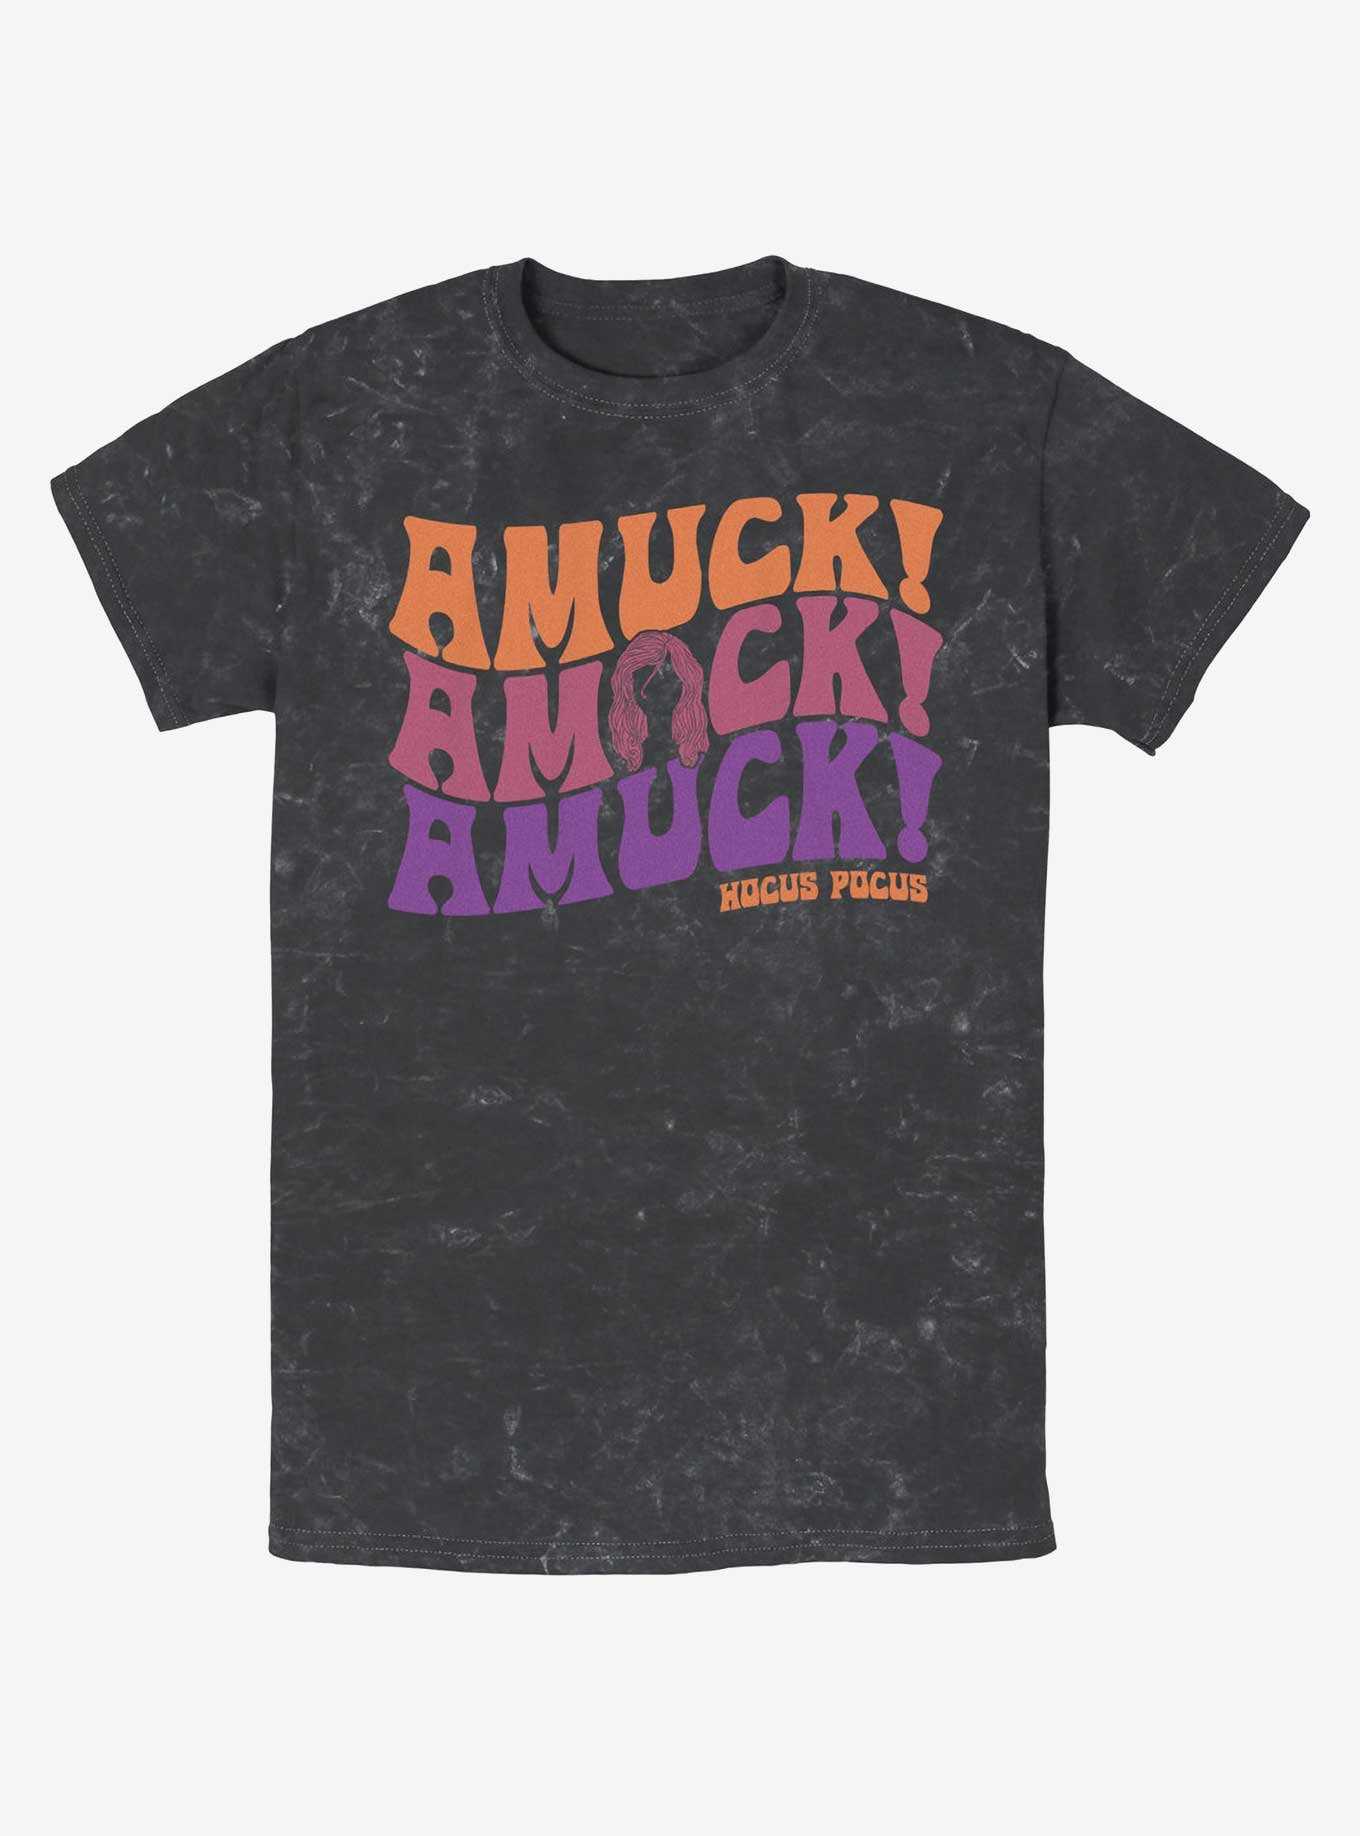 Disney Hocus Pocus Amuck, Amuck, Amuck! Mineral Wash T-Shirt, , hi-res